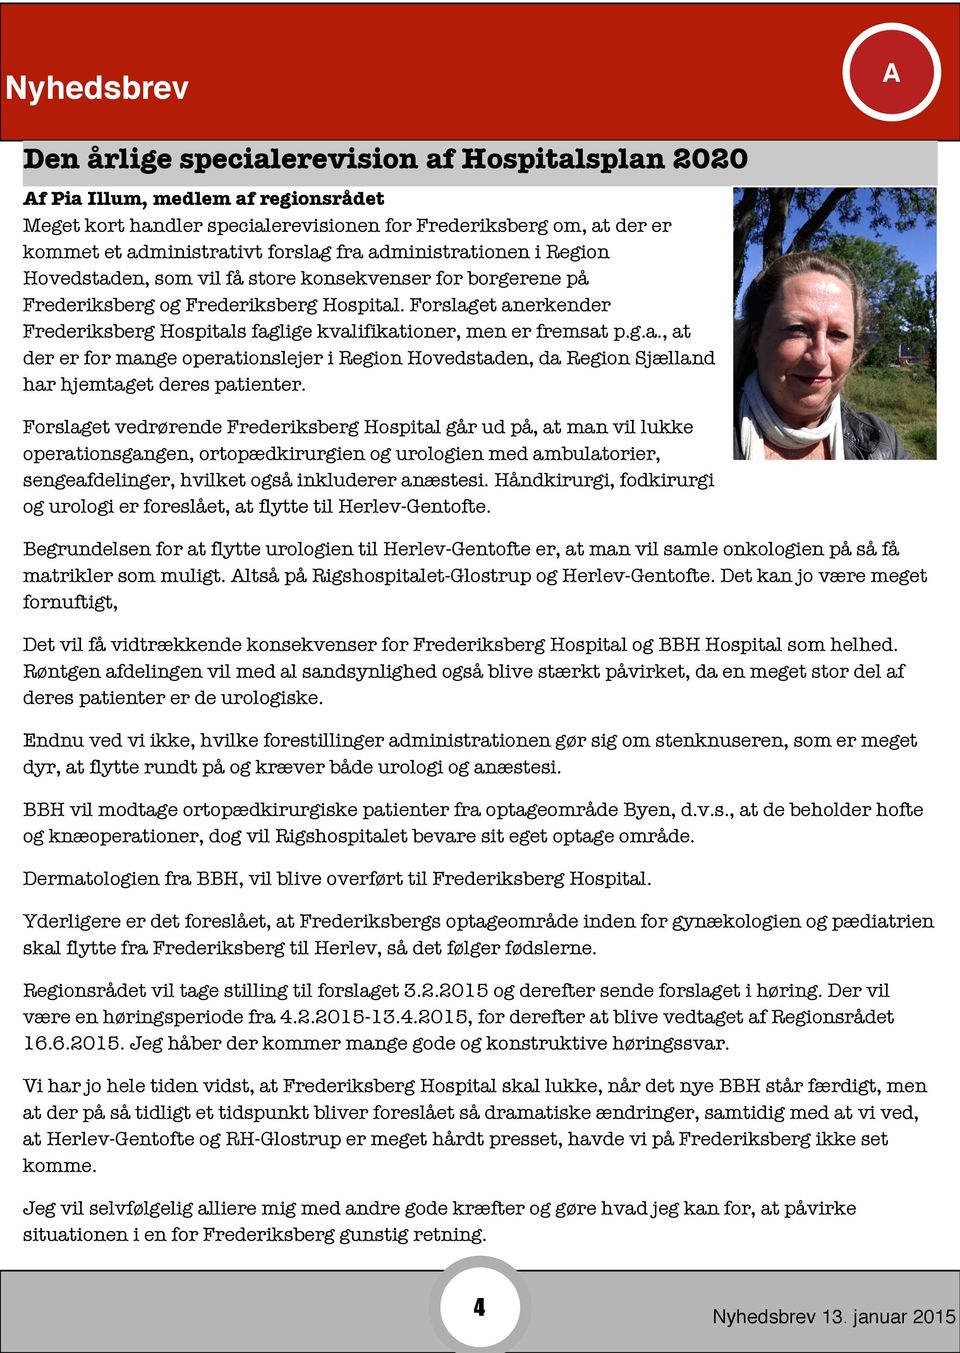 Forslaget anerkender Frederiksberg Hospitals faglige kvalifikationer, men er fremsat p.g.a., at der er for mange operationslejer i Region Hovedstaden, da Region Sjælland har hjemtaget deres patienter.